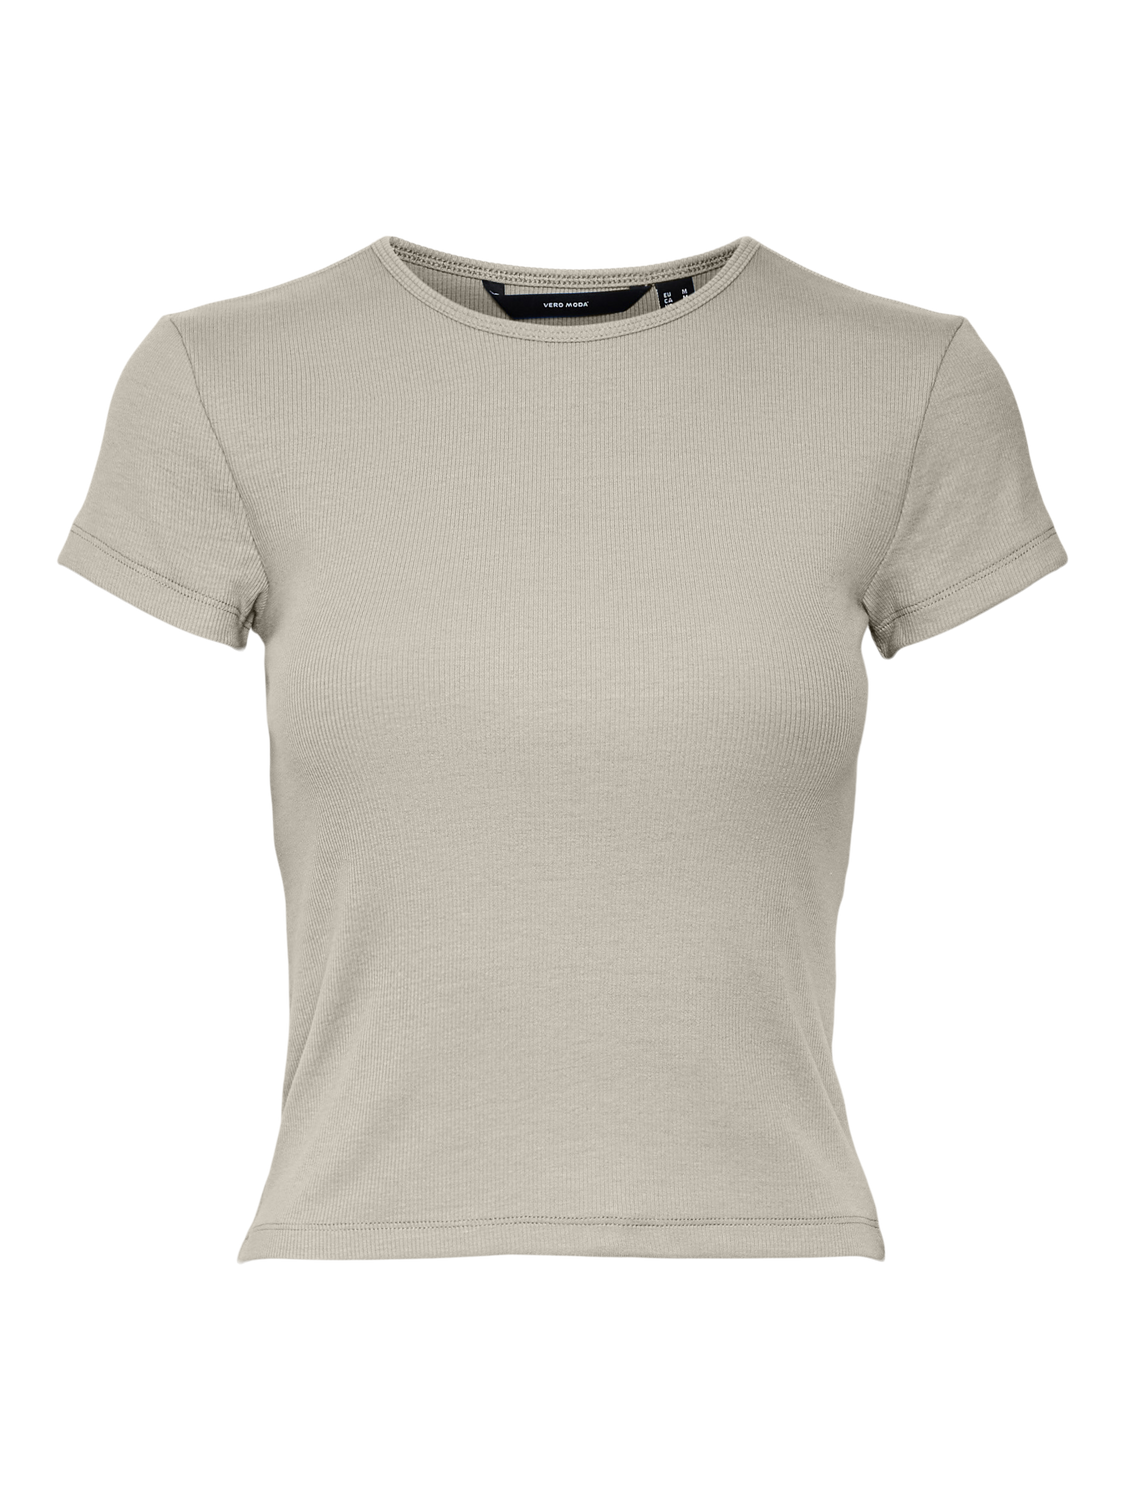 VMCHLOE T-Shirt - Silver Lining